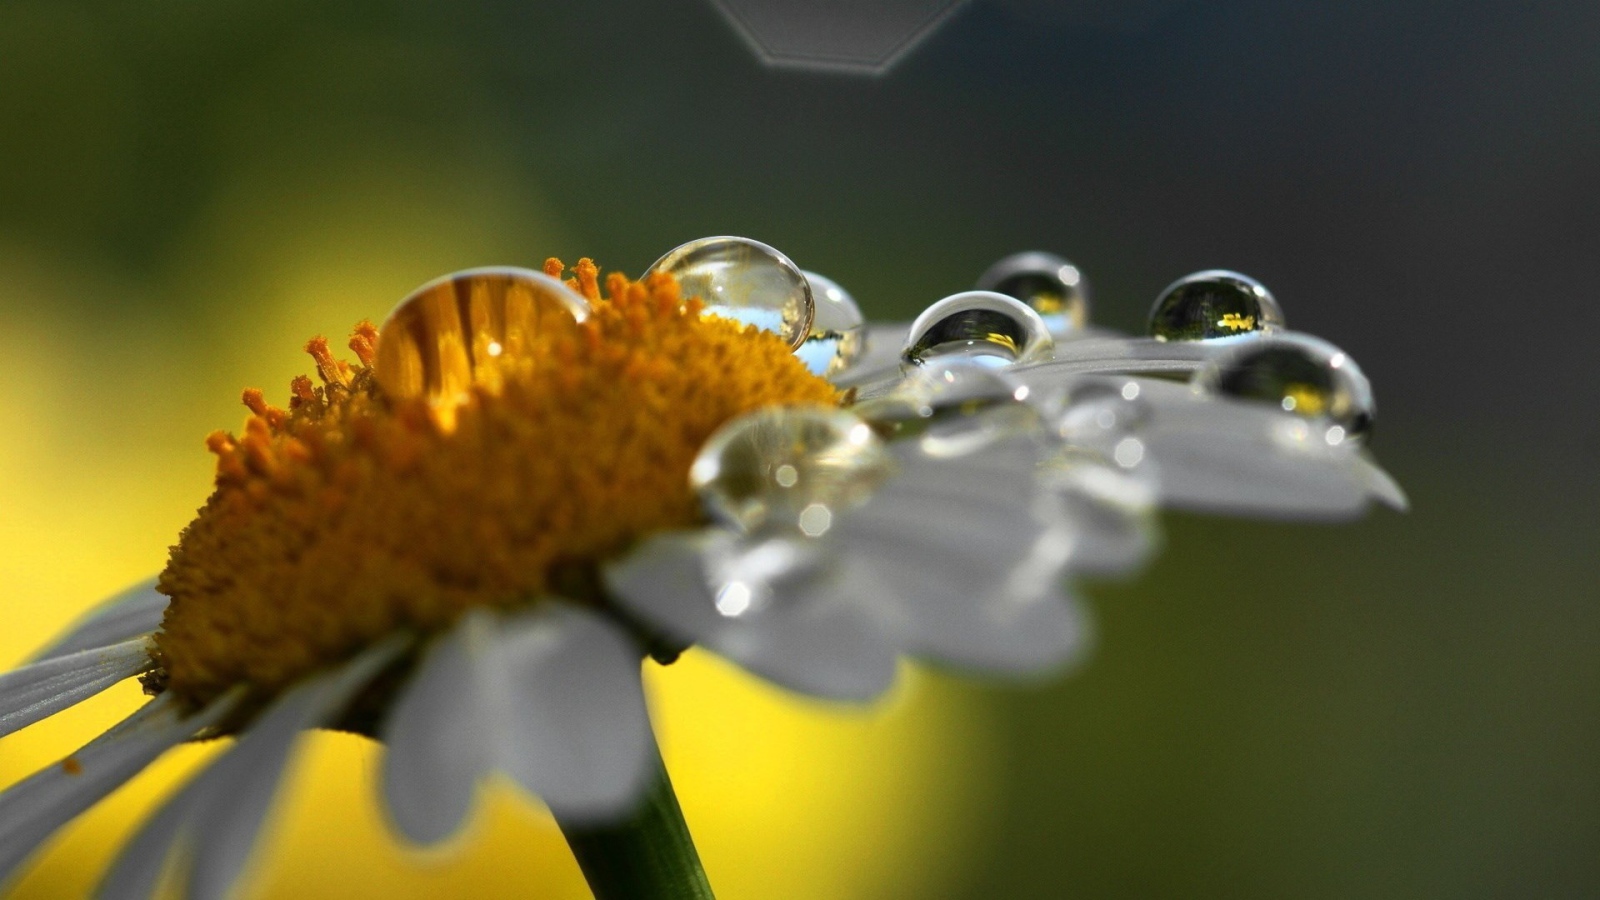 Dew on a daisy